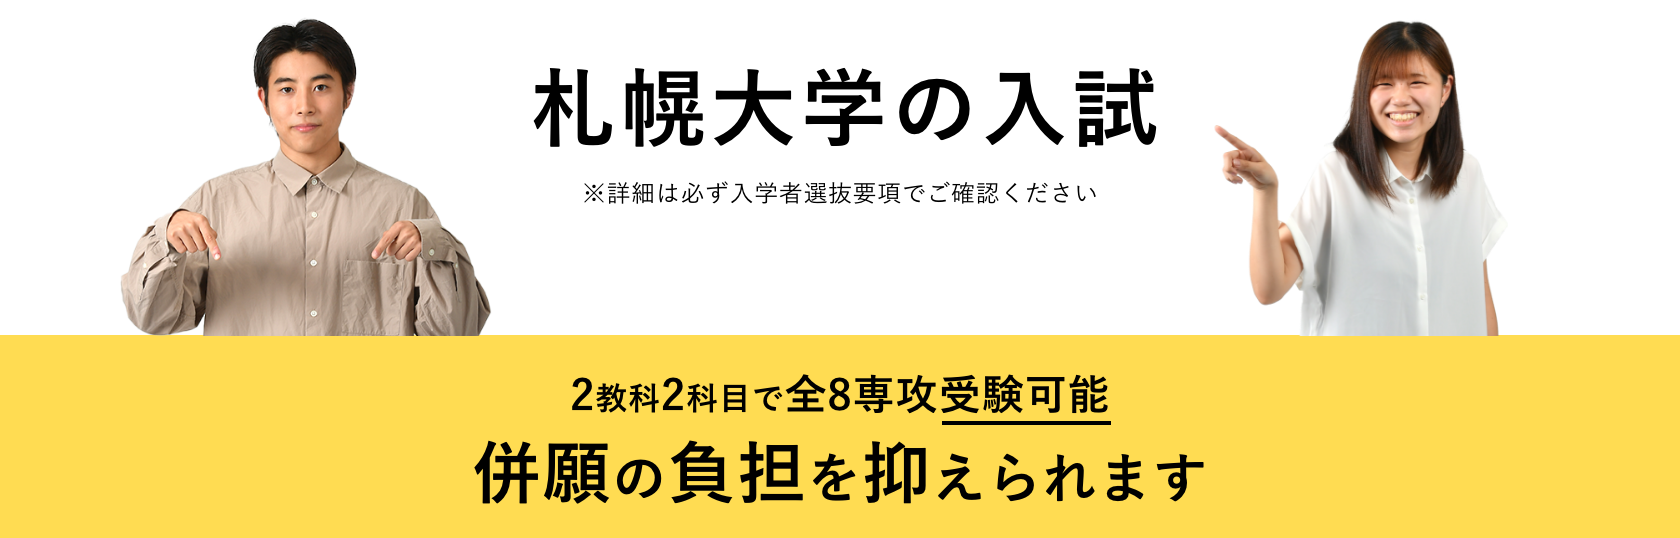 札幌大学の入試 ※詳細は必ず入学者選抜要項でご確認ください 2教科2科目で全8専攻受験可能 併願の負担を抑えられます